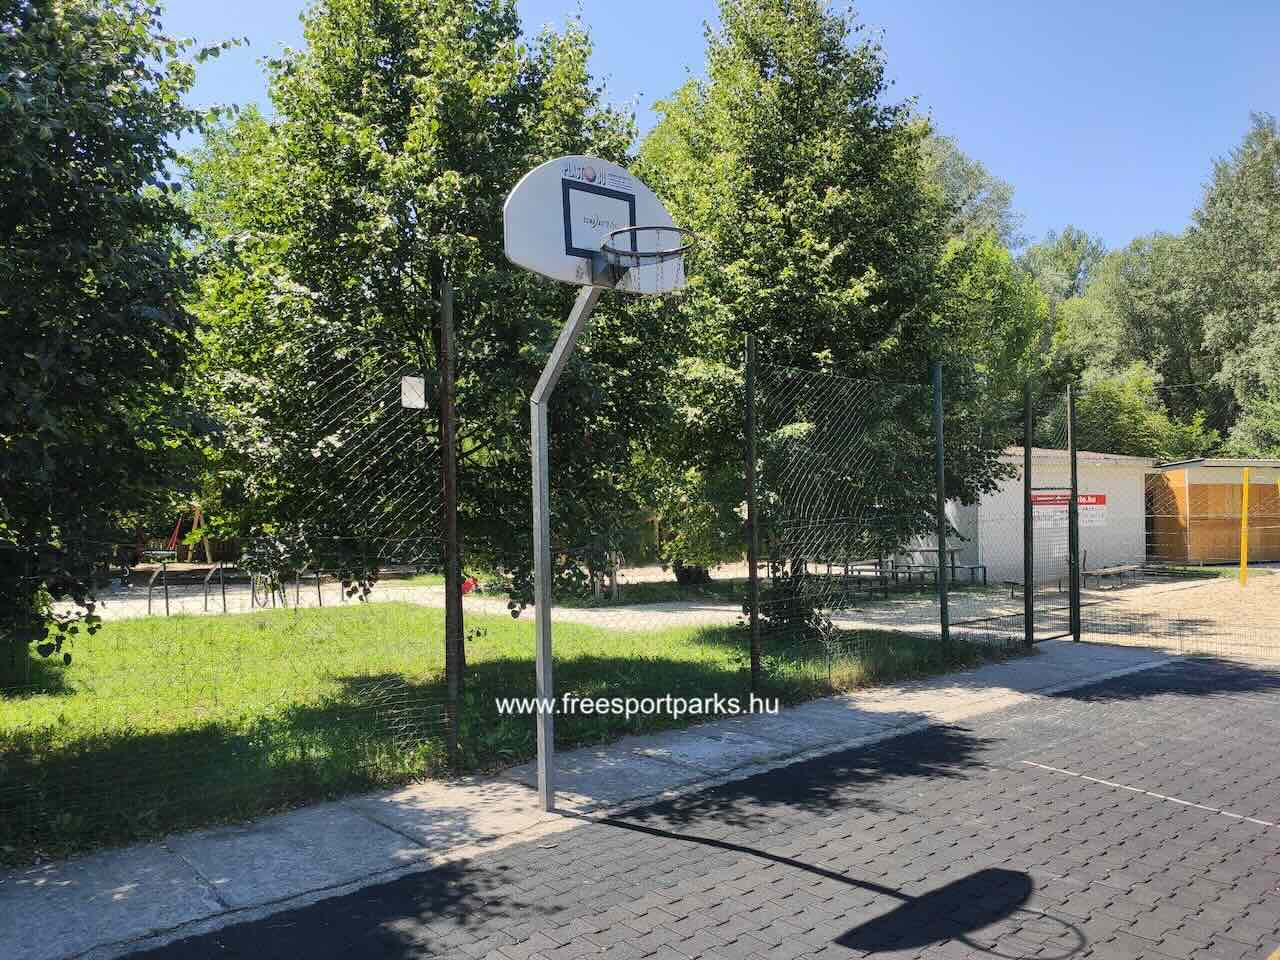 kosárlabda palánk láncos hálóval, Gladiátor utca családi pihenőpark Óbudán, Free Sport Parks térkép